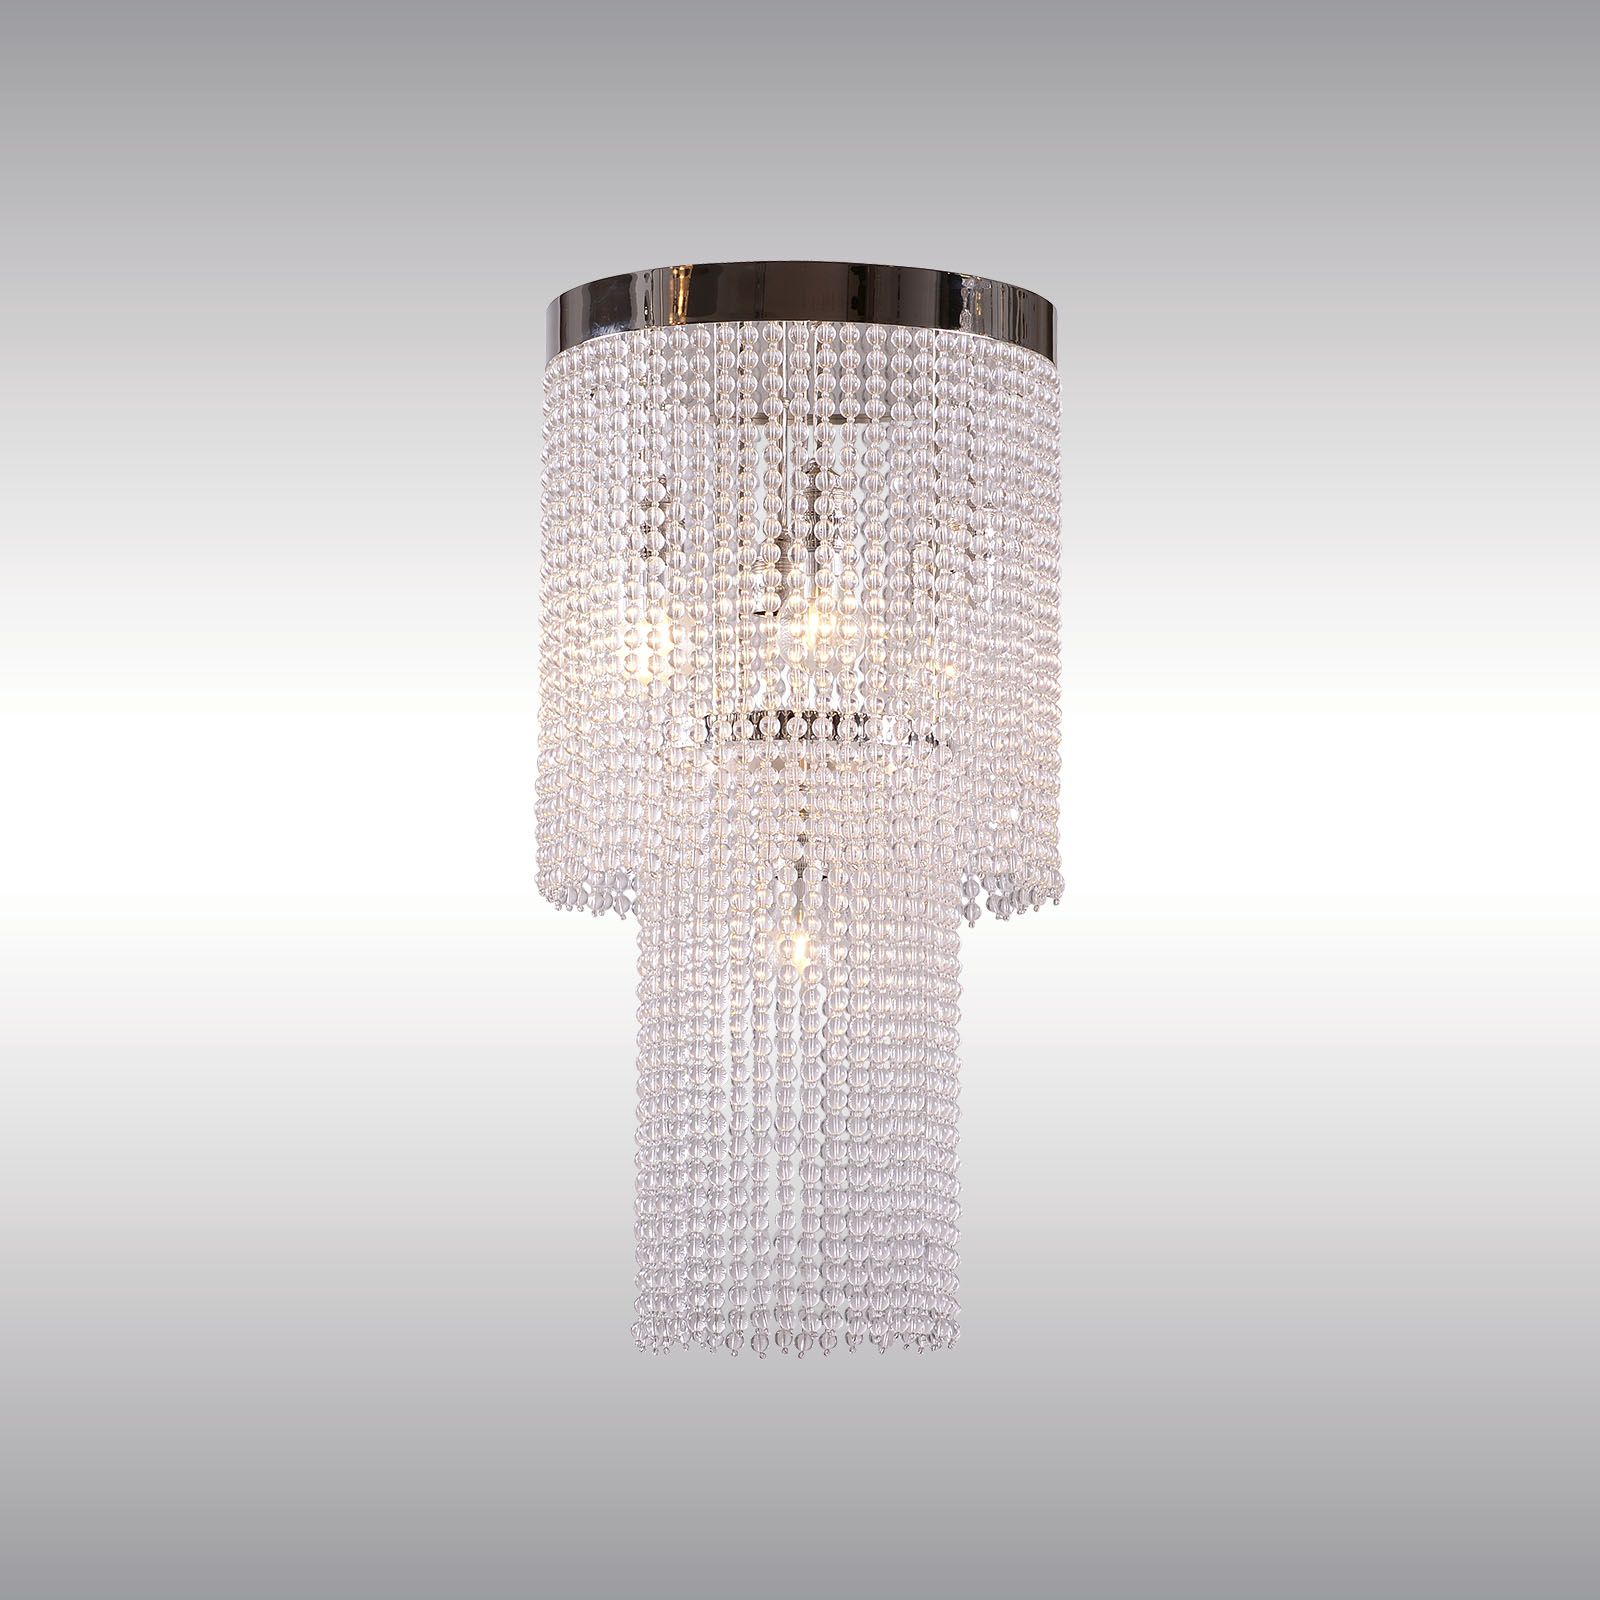 WOKA LAMPS VIENNA - OrderNr.: 39|CR2 Brauner Hochstaetter - Design: Josef Hoffmann